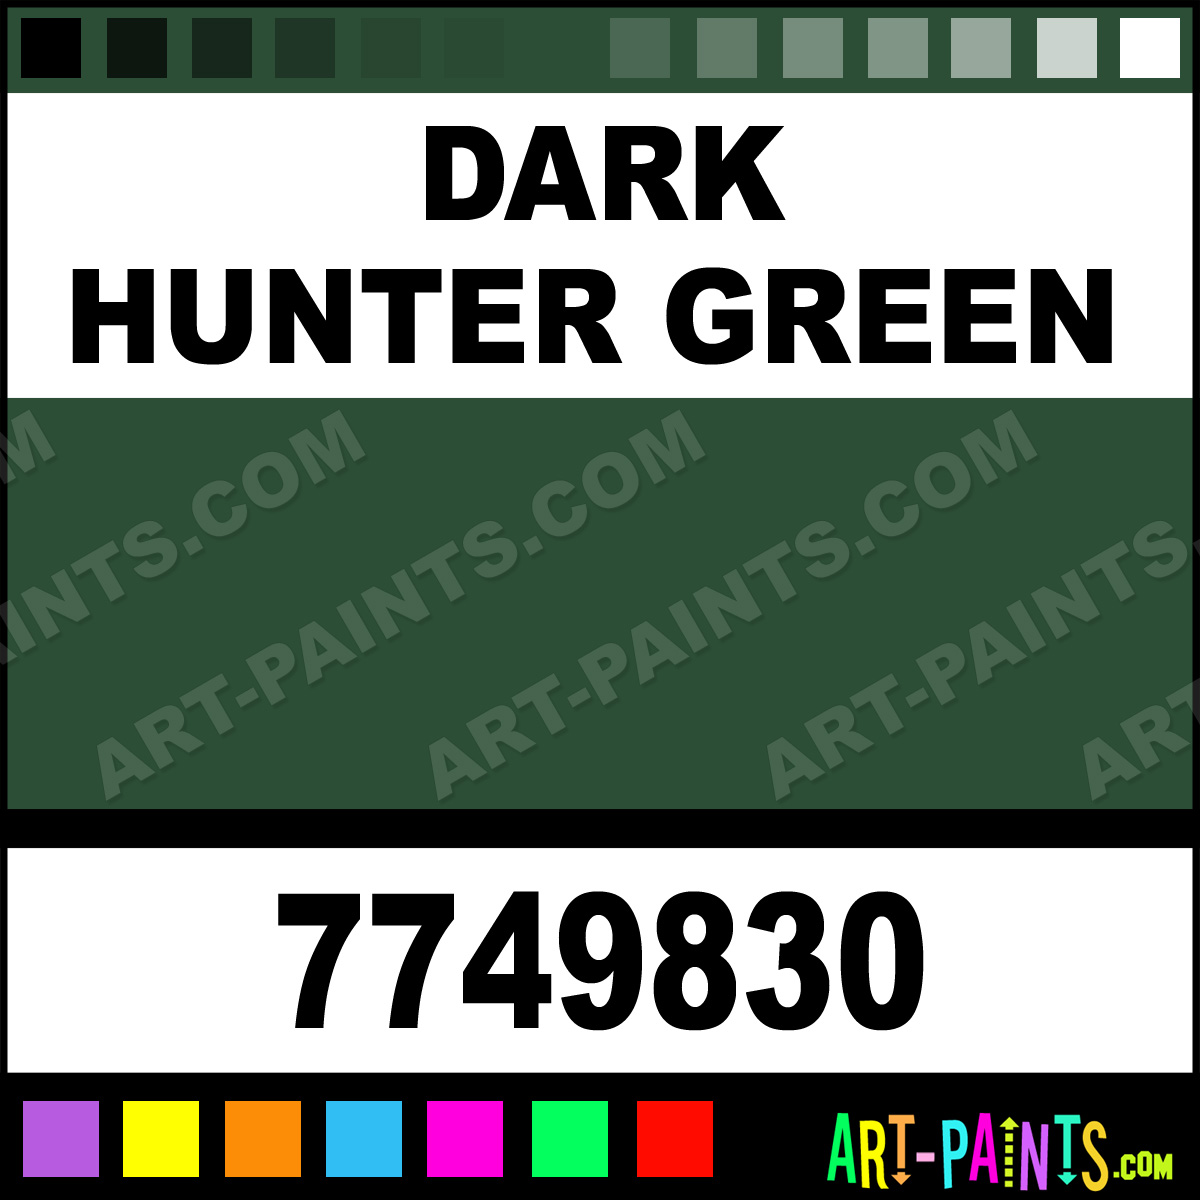 Dark Hunter Green Satin Enamel Paints - 7749830 - Dark Hunter Green